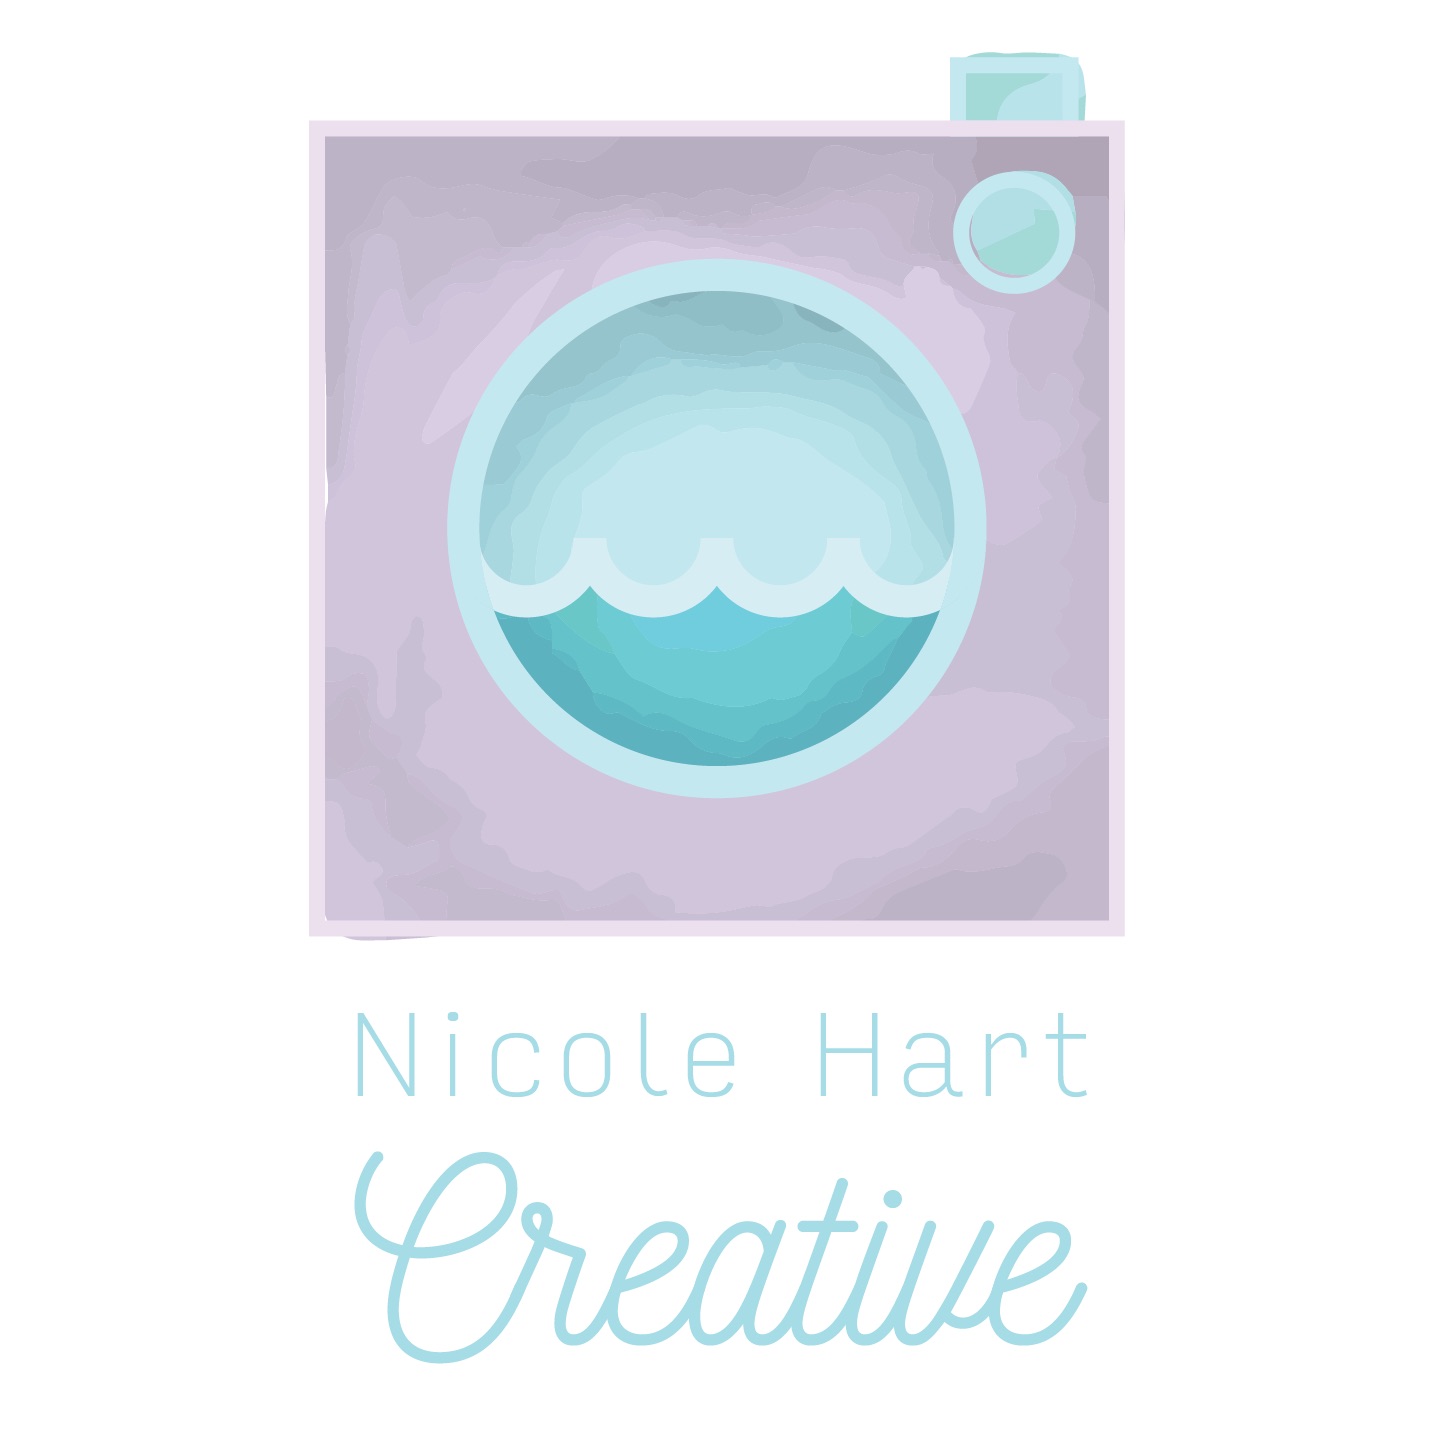 Nicole Hart Creative